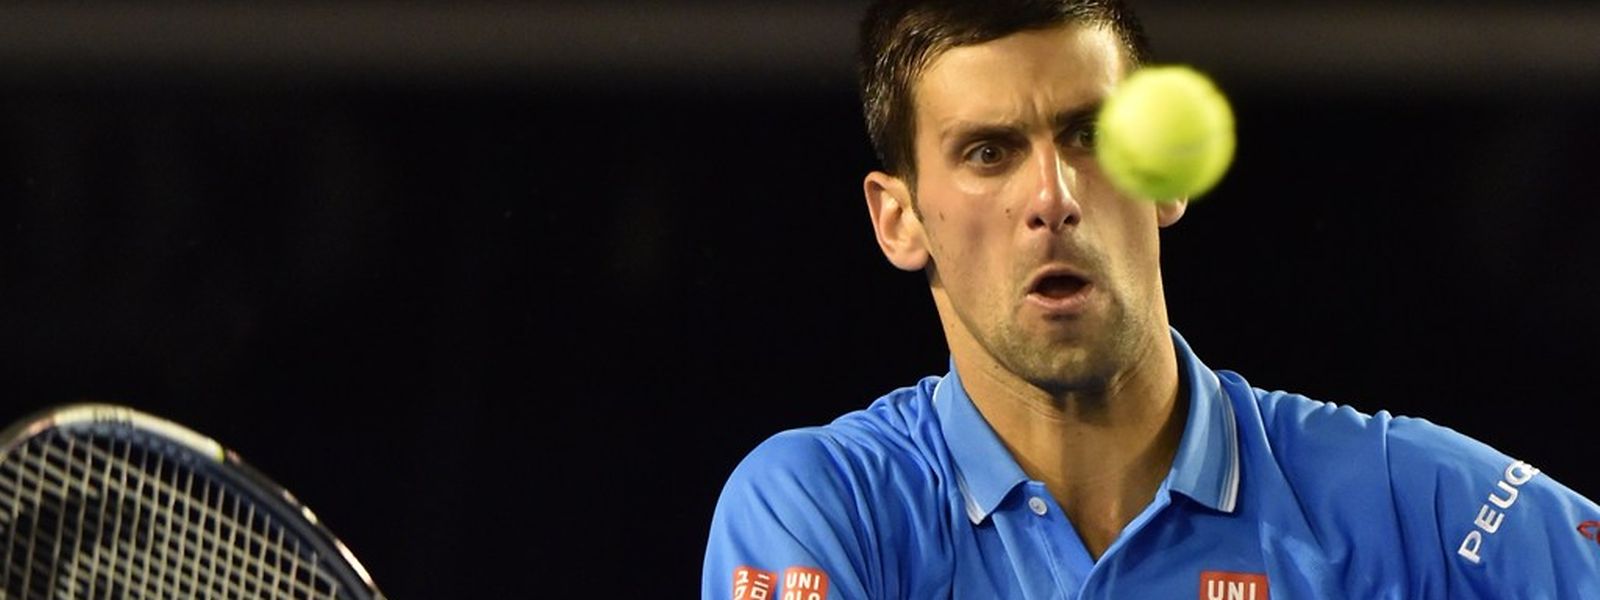 Le n°1 mondial Novak Djokovic accède à la finale de l'Open d'Australie, où il affrontera le Britannique Andy Murray dimanche